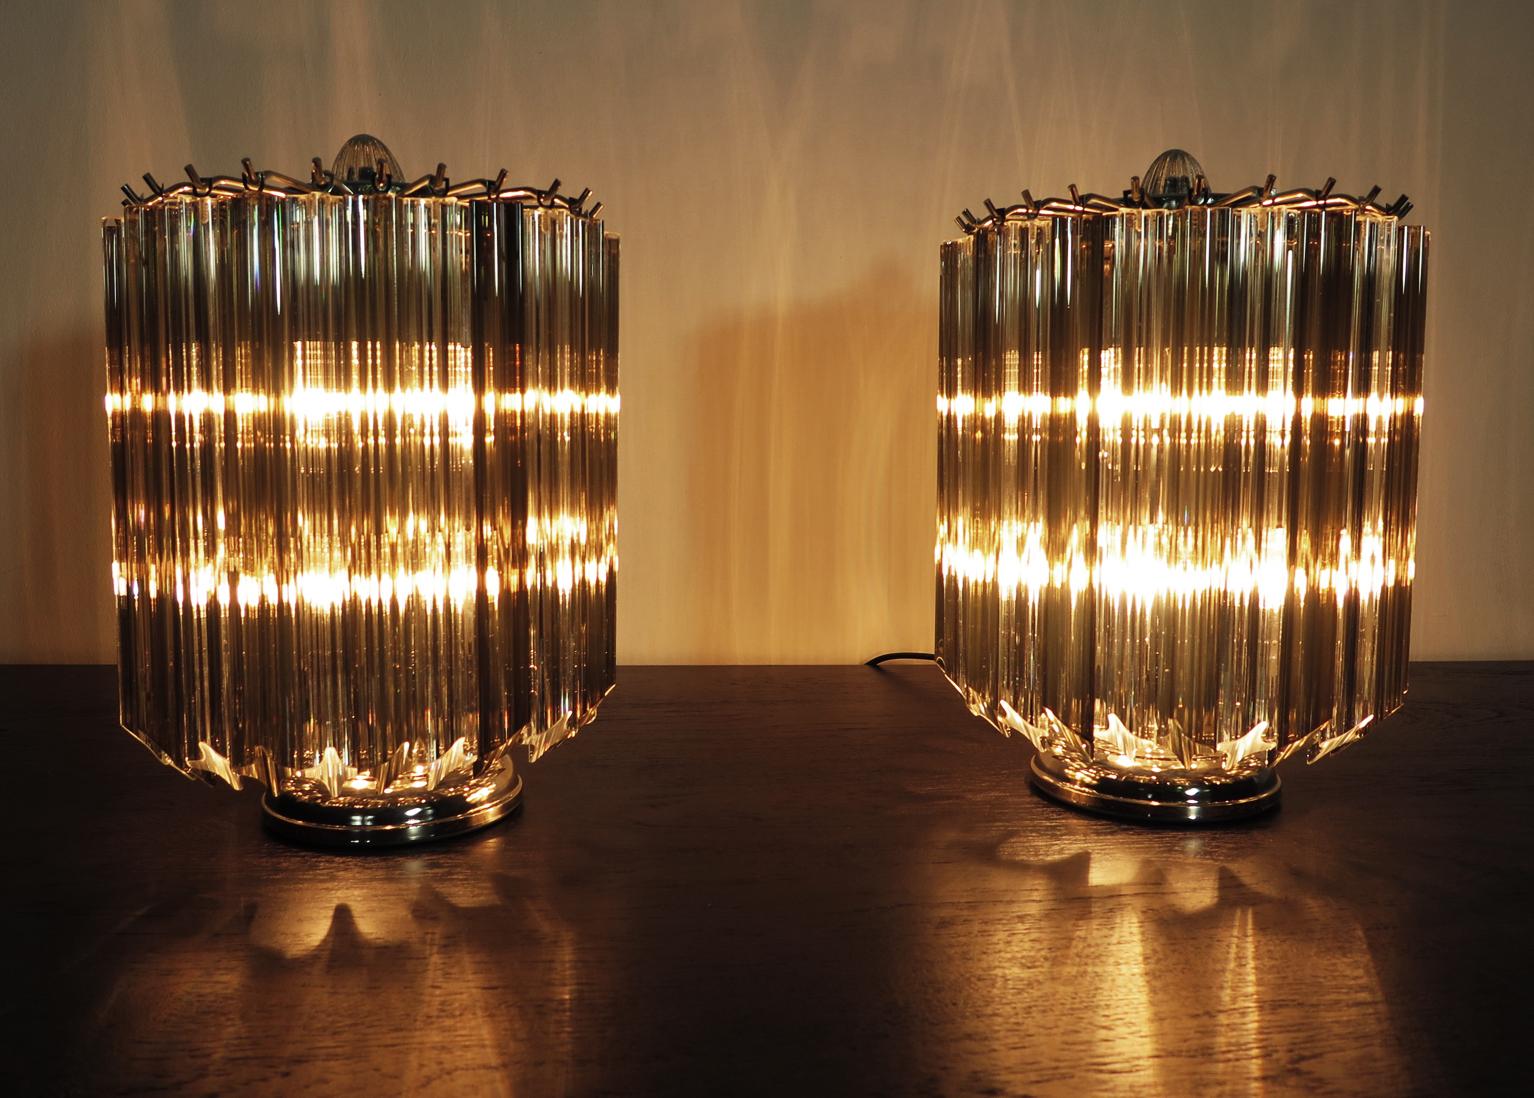 Prächtiges Paar Tischlampen, 24 trasparente und geräucherte Quadriedri für jede Lampe. Elegantes Möbelstück.
Zeitraum: Ende des XX. Jahrhunderts
Abmessungen: 15 Zoll (38 cm) Höhe; 10,50 Zoll (27 cm) Durchmesser.
Dimension Brille:  11 Zoll (28 cm)